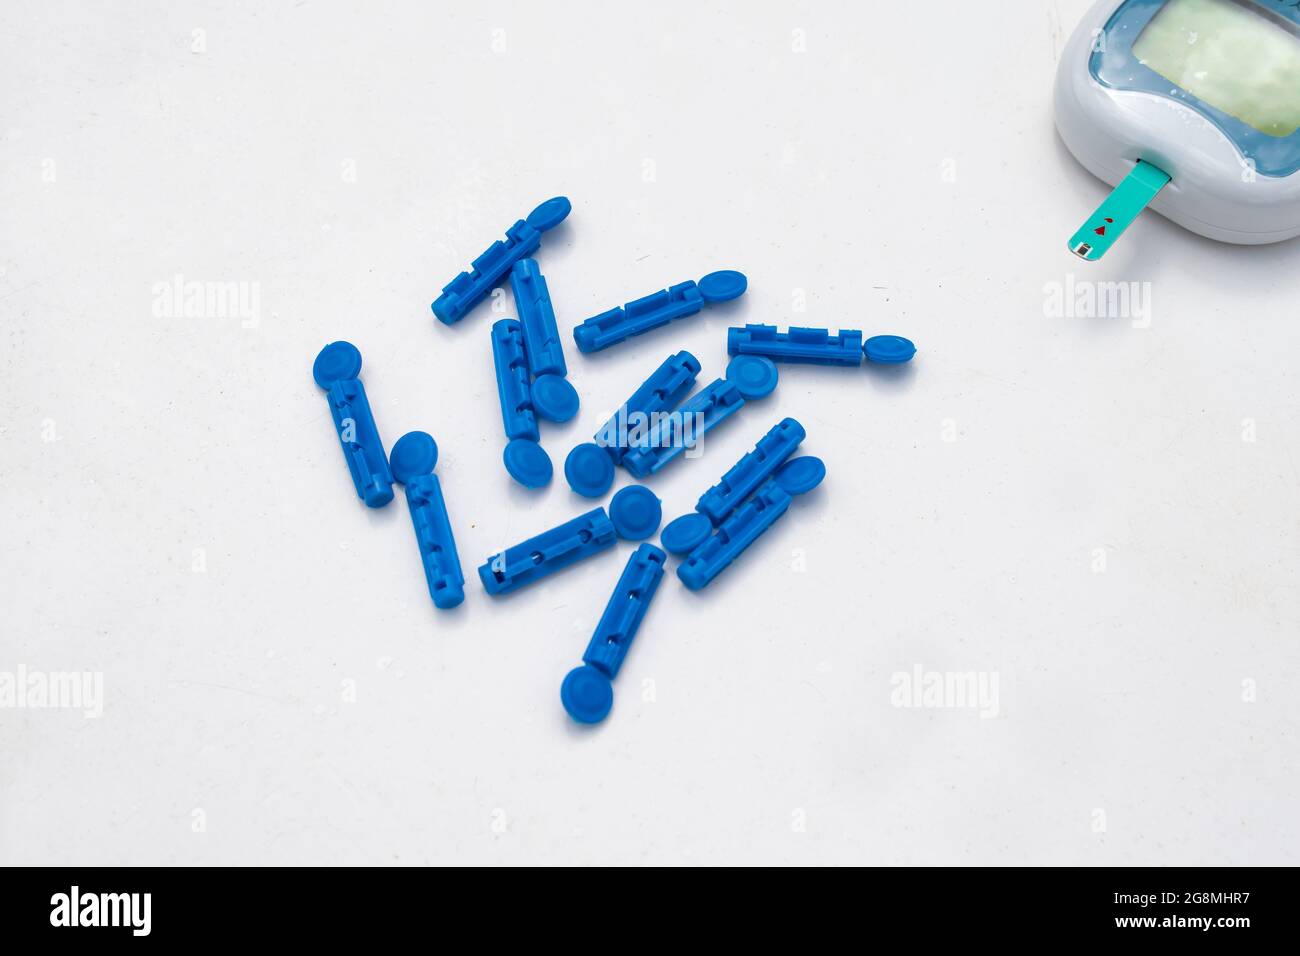 Un set di lancette o aghi blu per il monitoraggio della glicemia